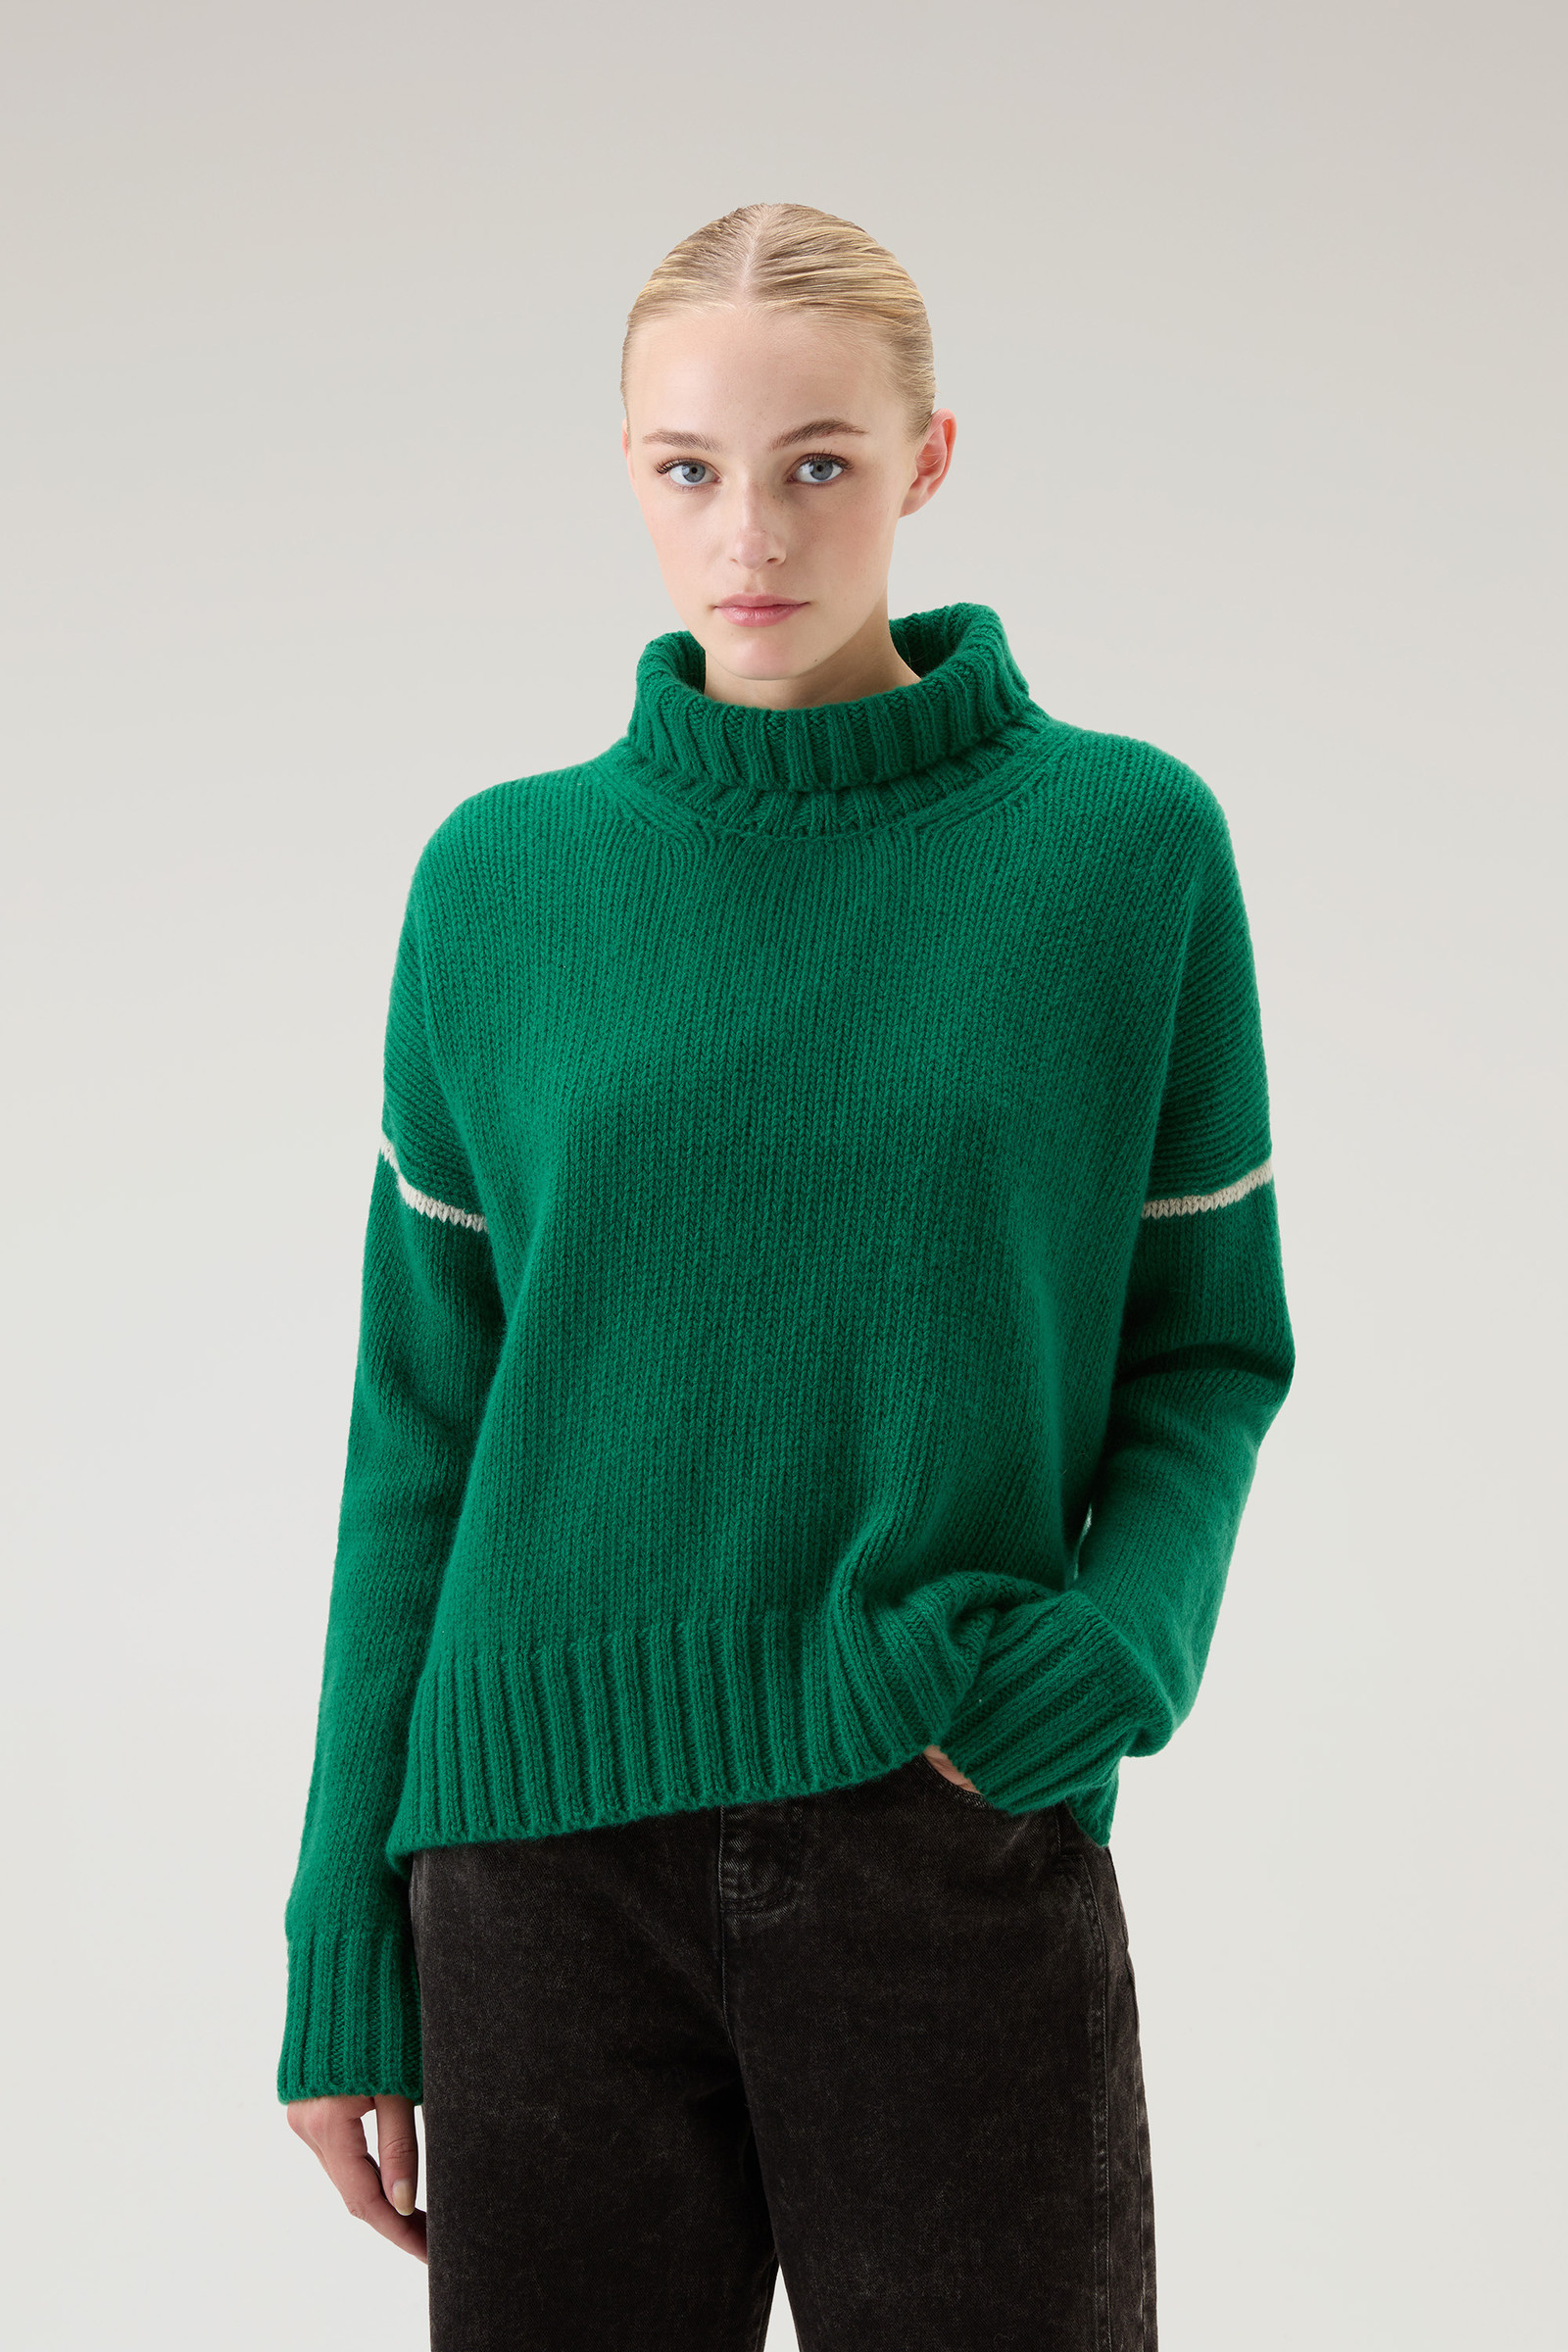 Women's Turtleneck Sweater in Pure Virgin Wool Green | Woolrich USA